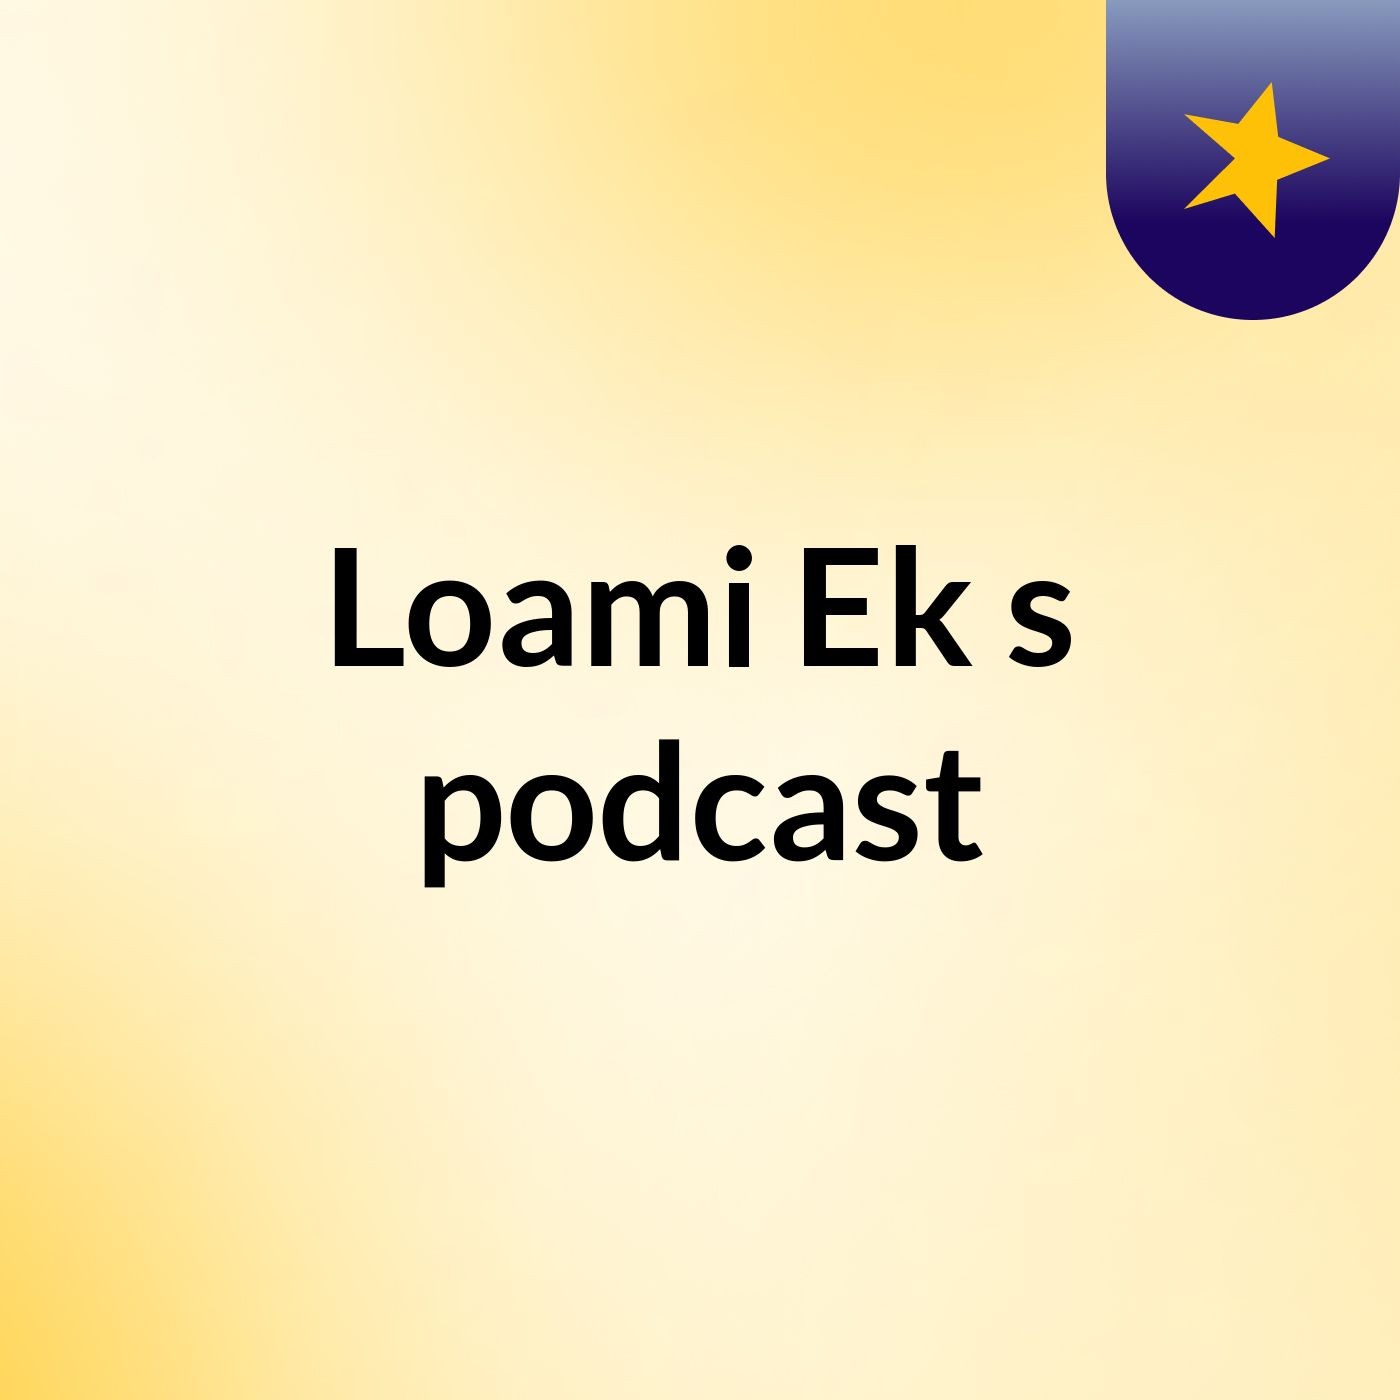 Loami Ek's podcast